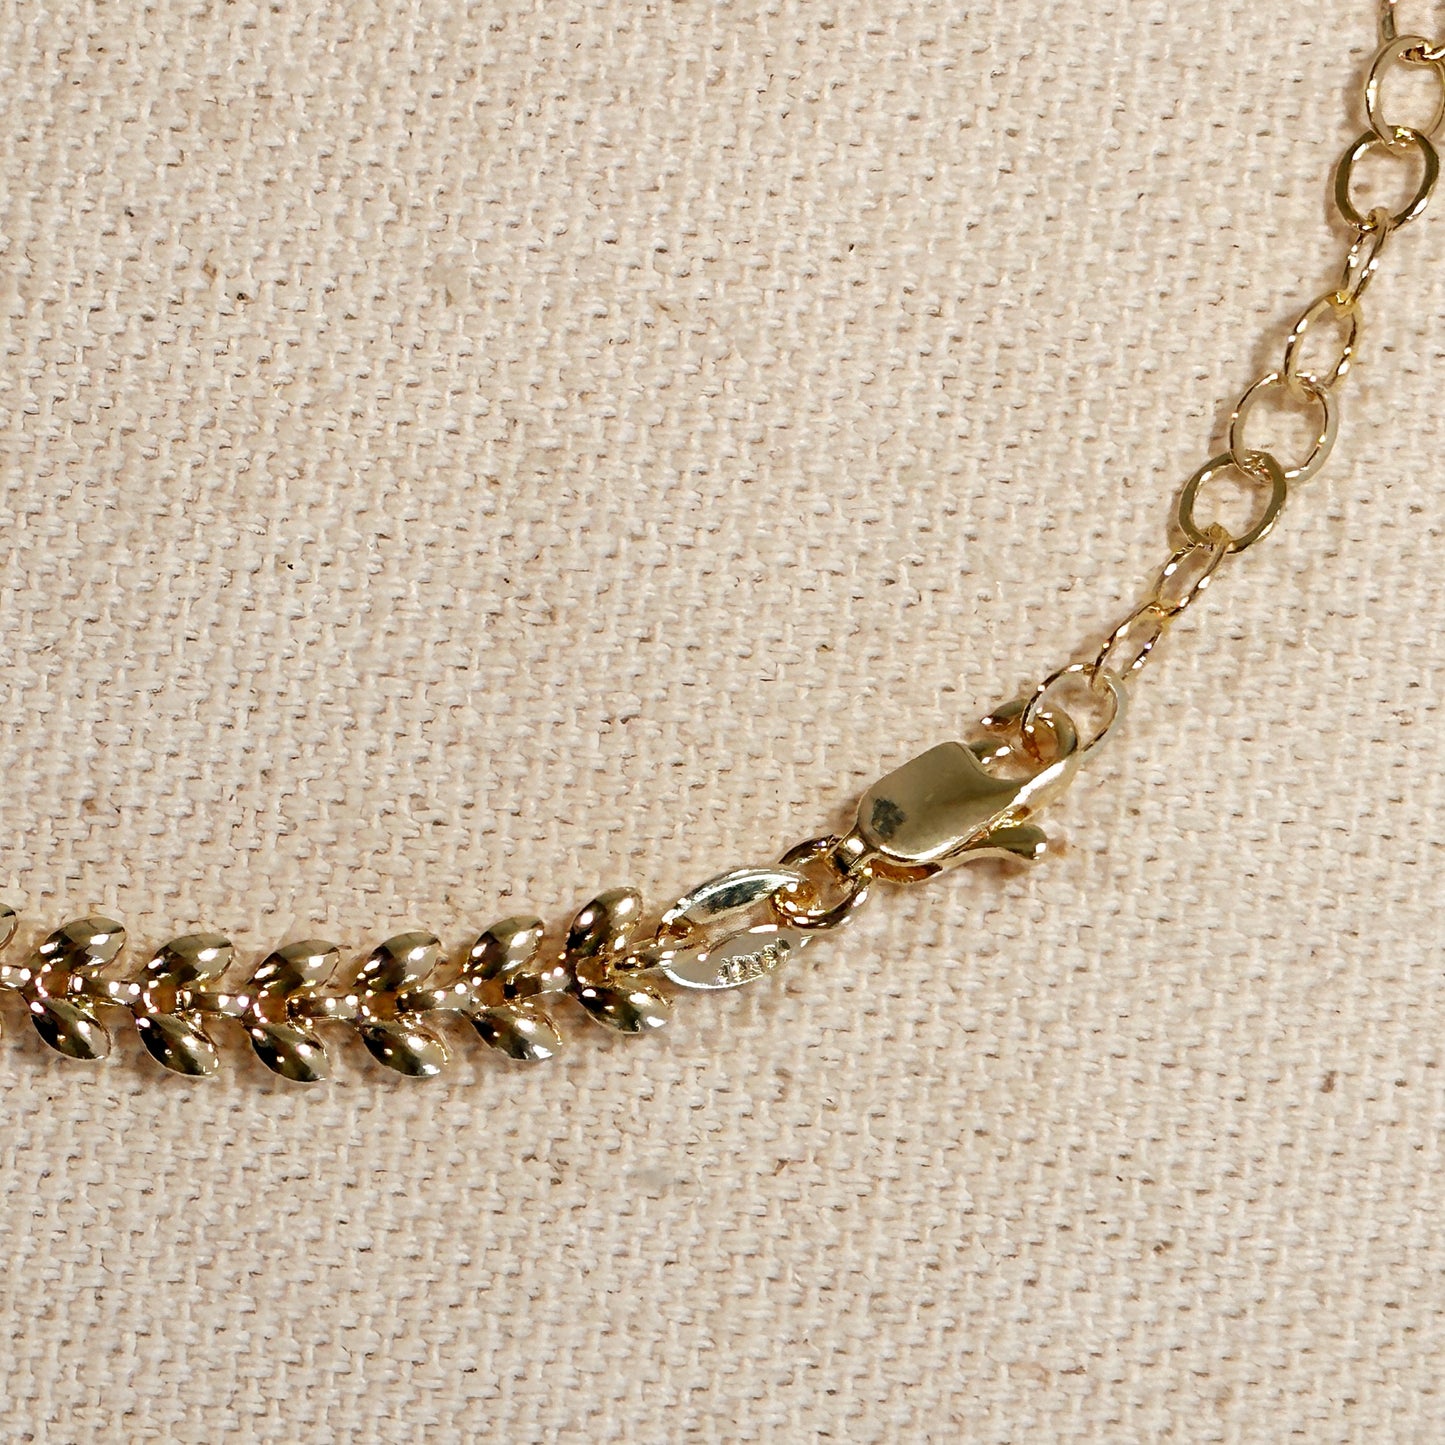 18k Gold Filled Leaf Choker Necklace